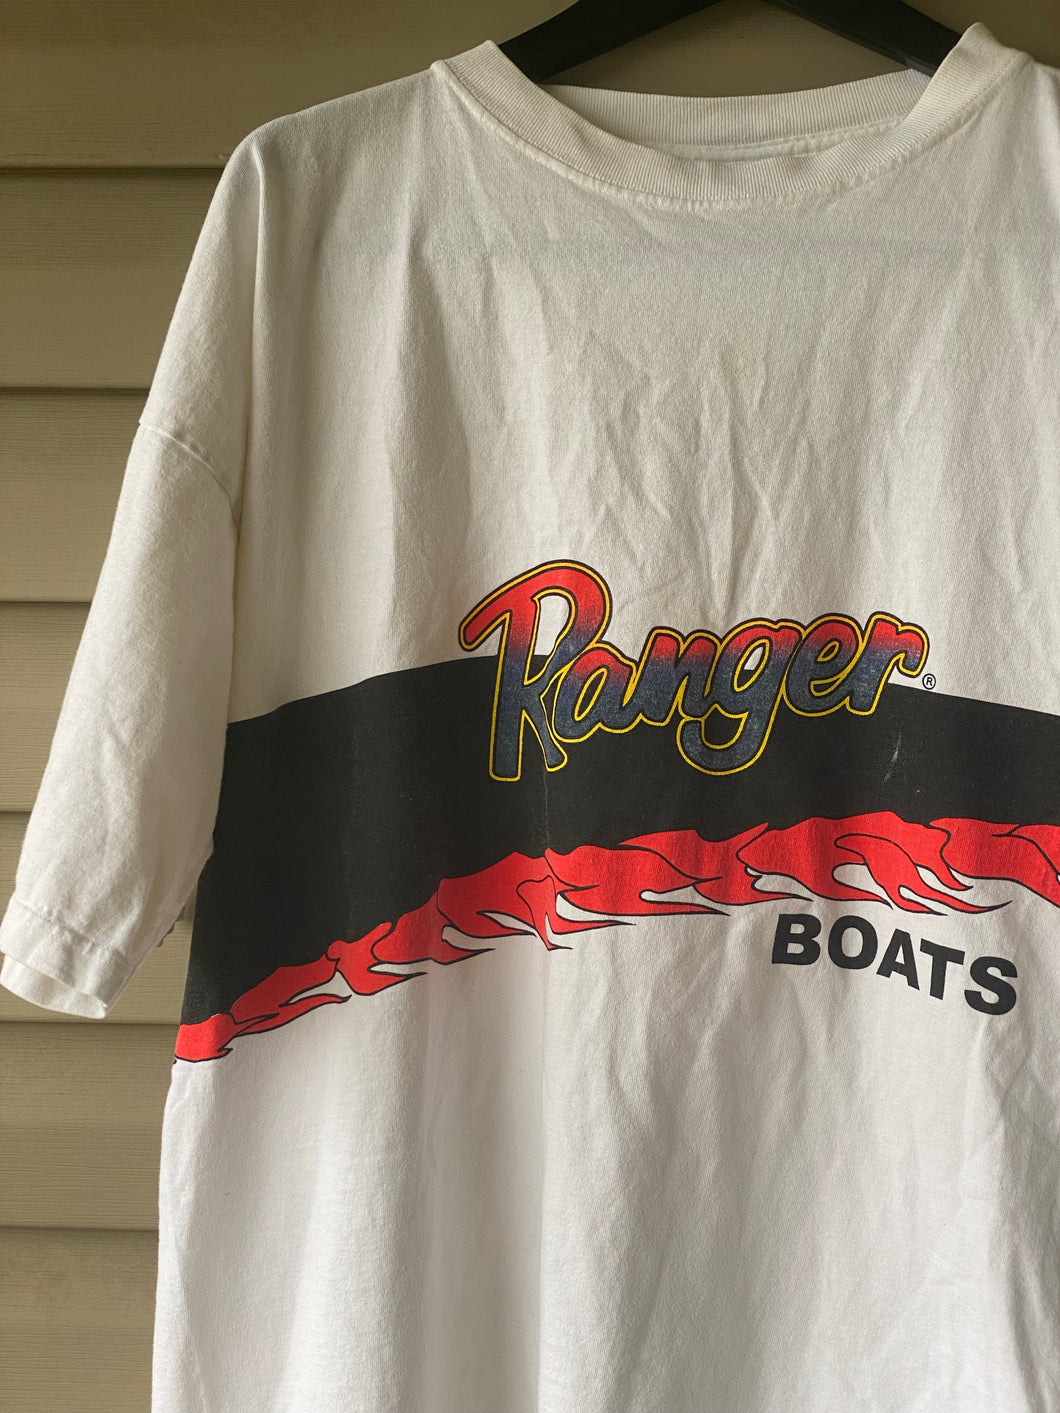 Ranger Boats Shirt (XL/XXL)